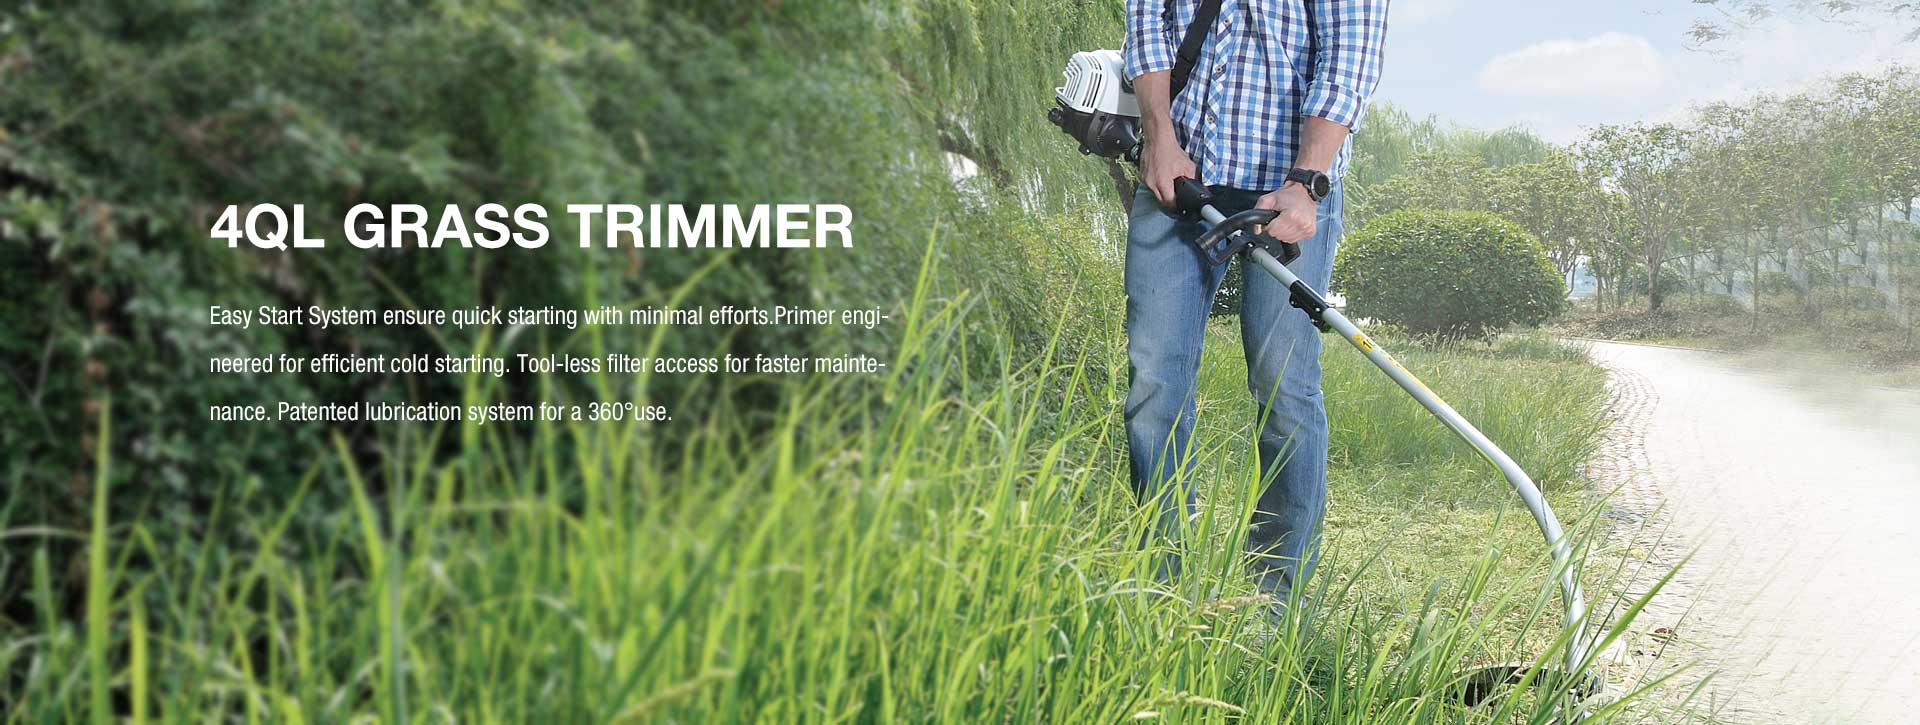 4QL-Grass Trimmer